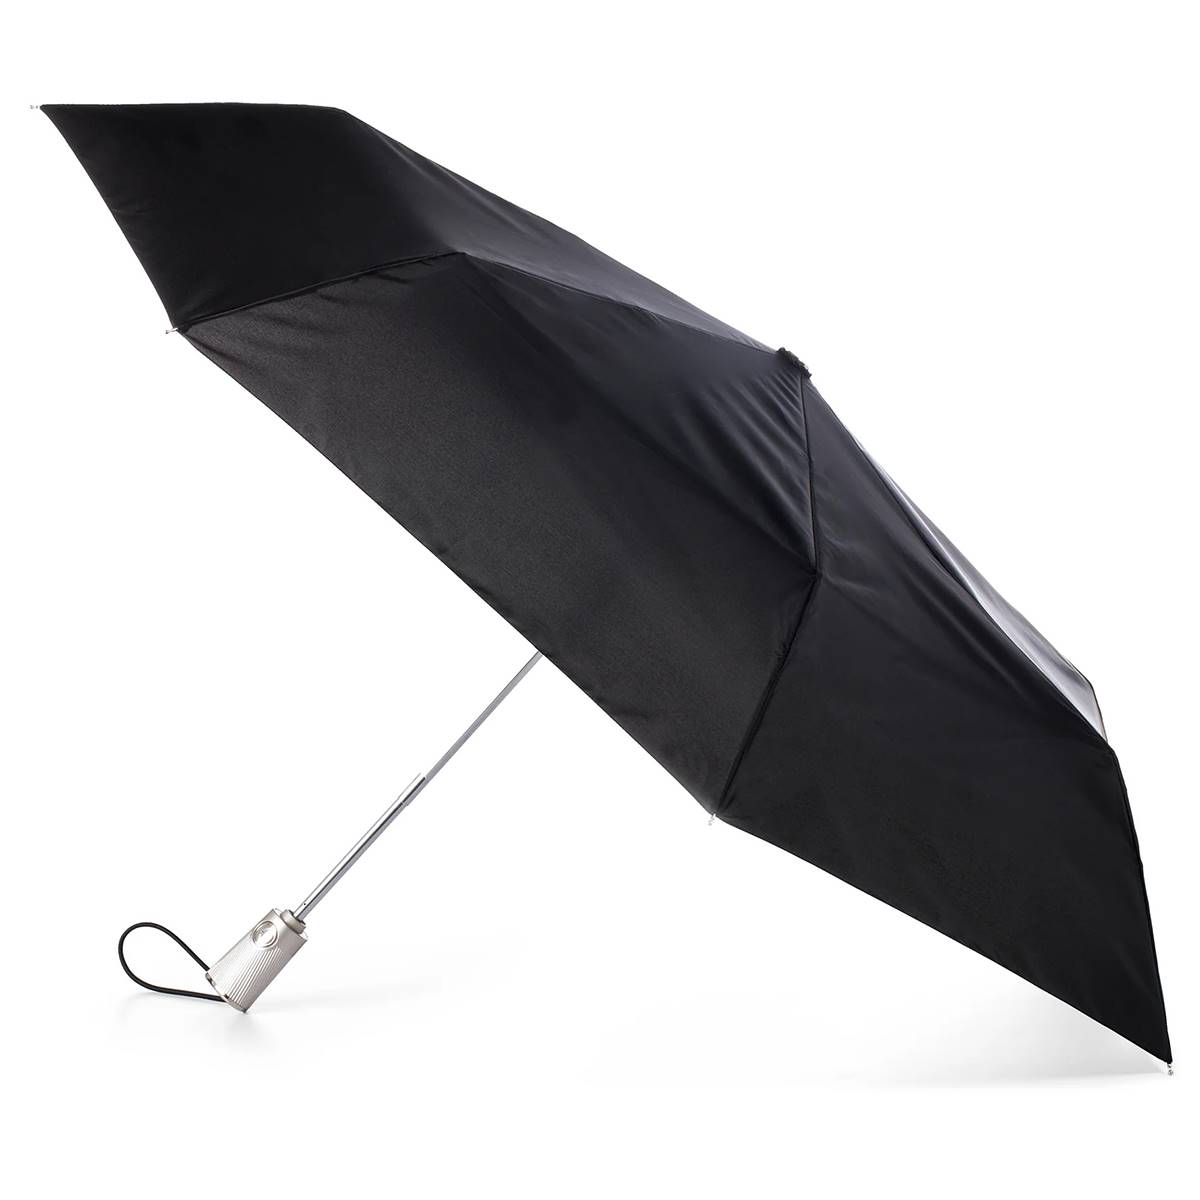 Totes 3-Section Auto Open/Close SunGuard(R) Umbrella